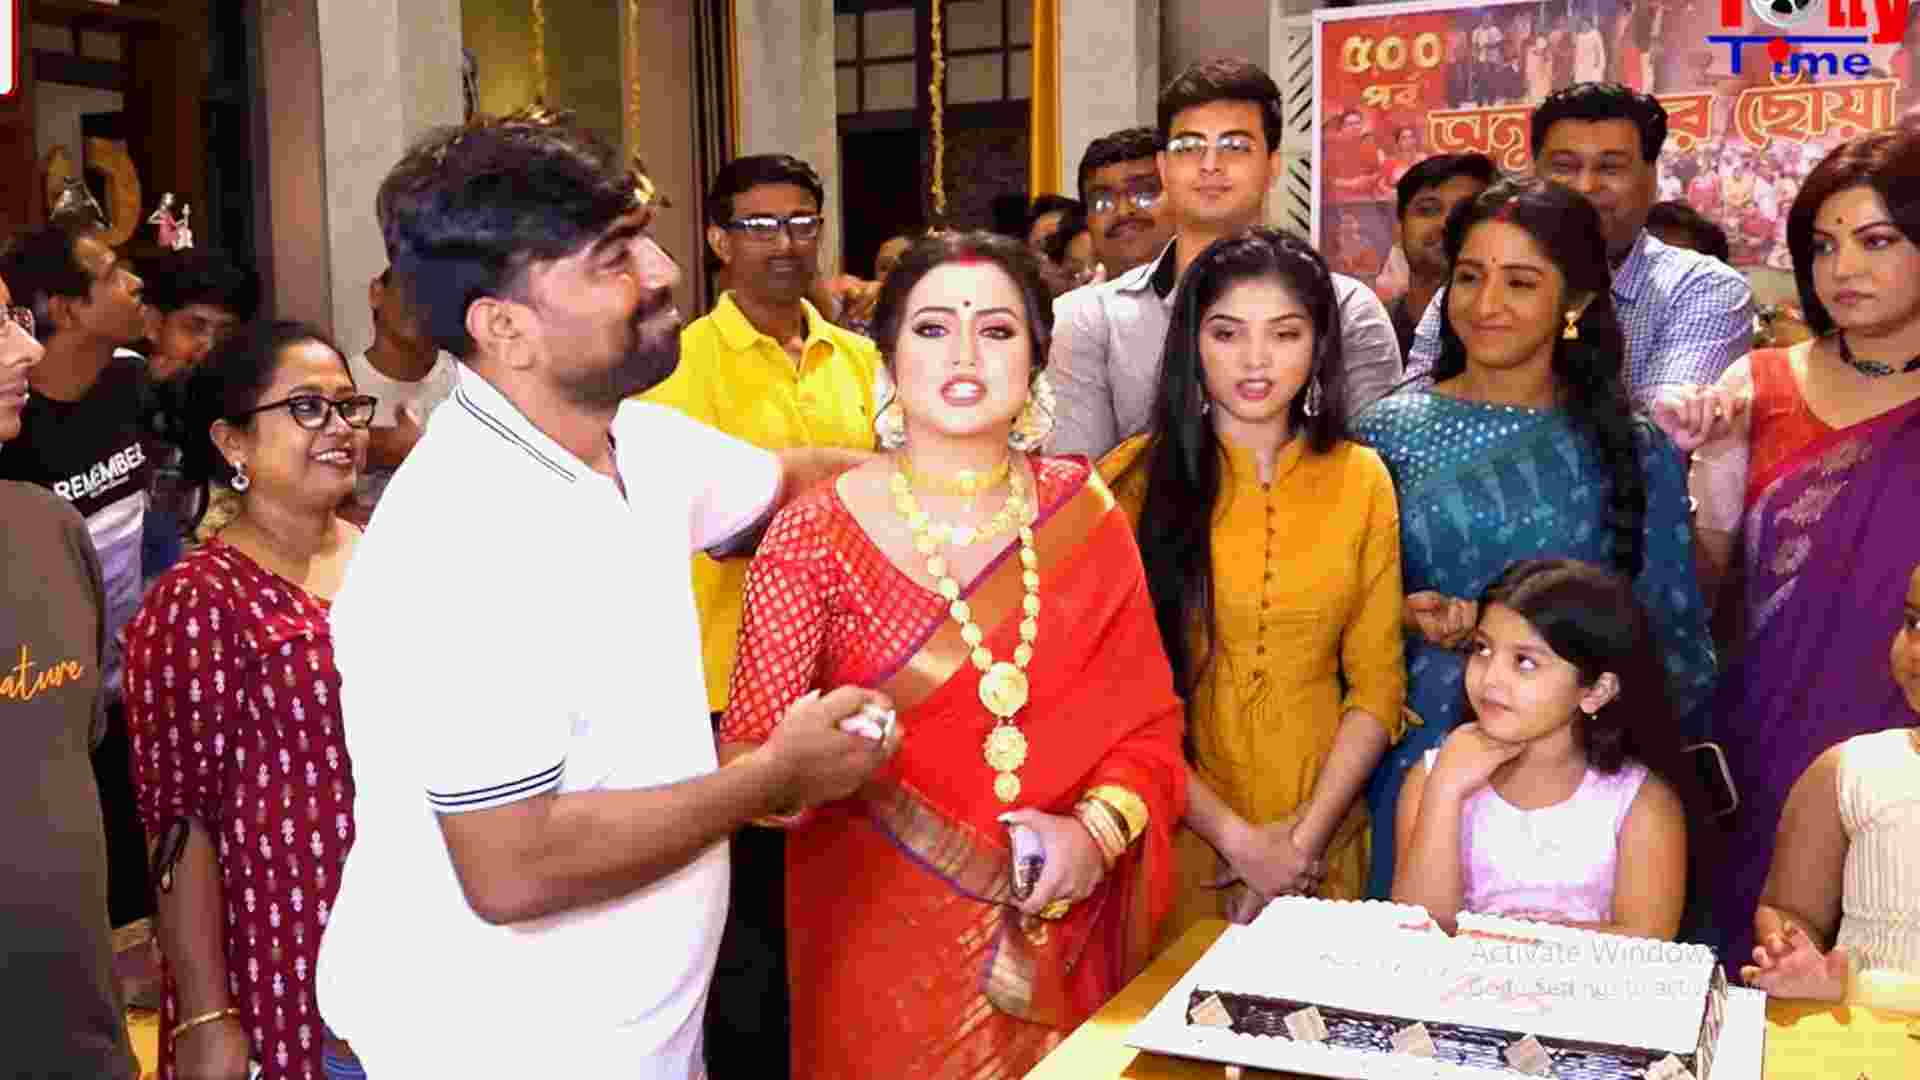 anurager chowa serial new twist surja marry mishka